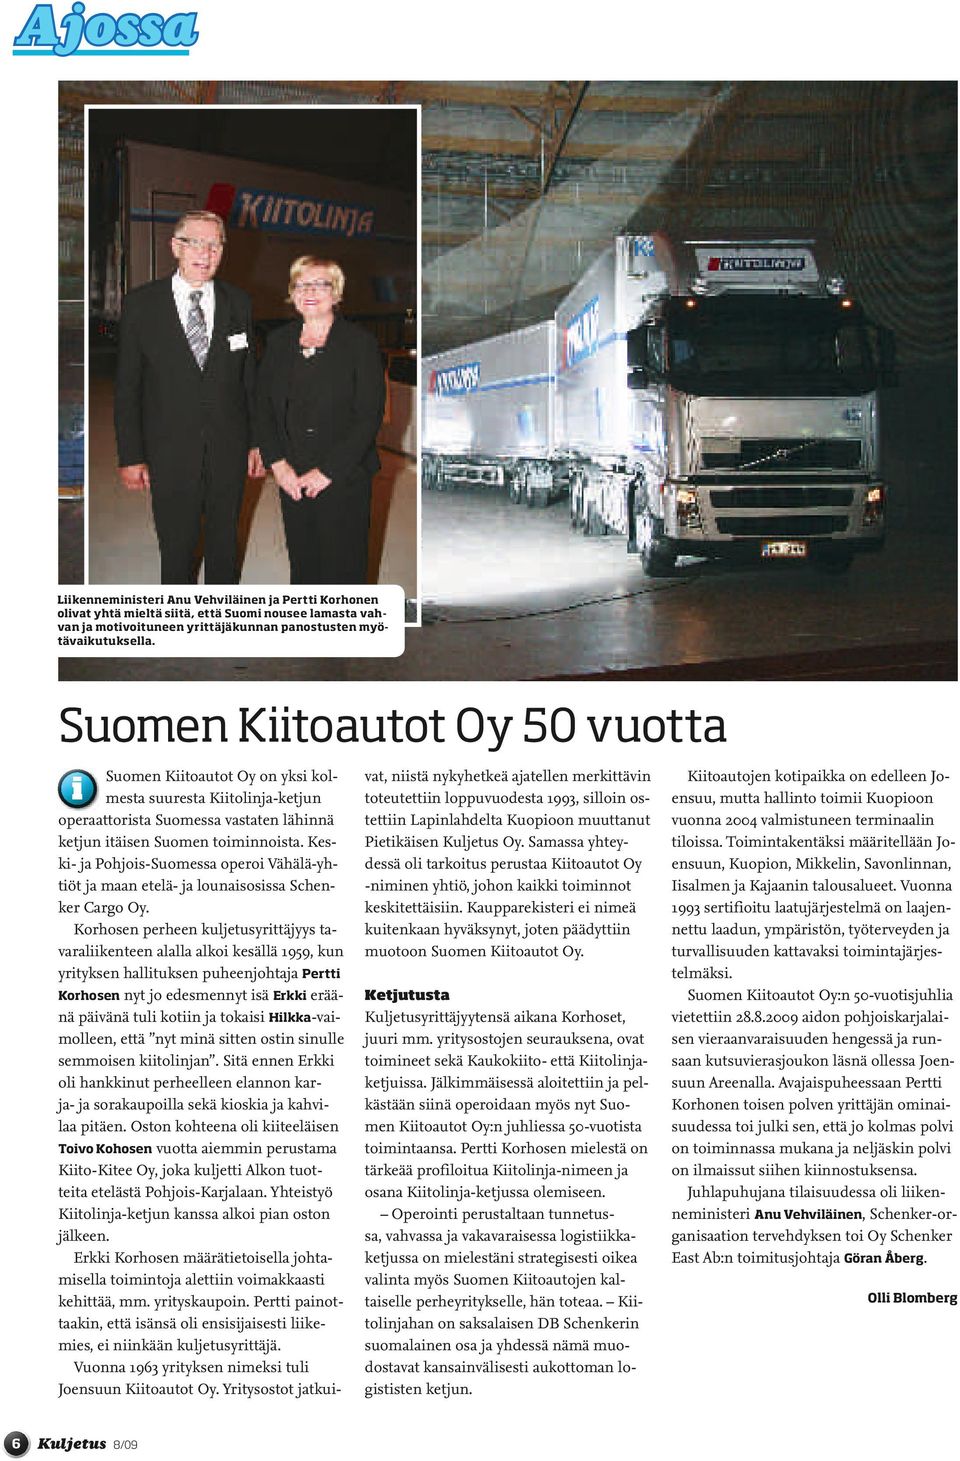 Keski- ja Pohjois-Suomessa operoi Vähälä-yhtiöt ja maan etelä- ja lounaisosissa Schenker Cargo Oy.